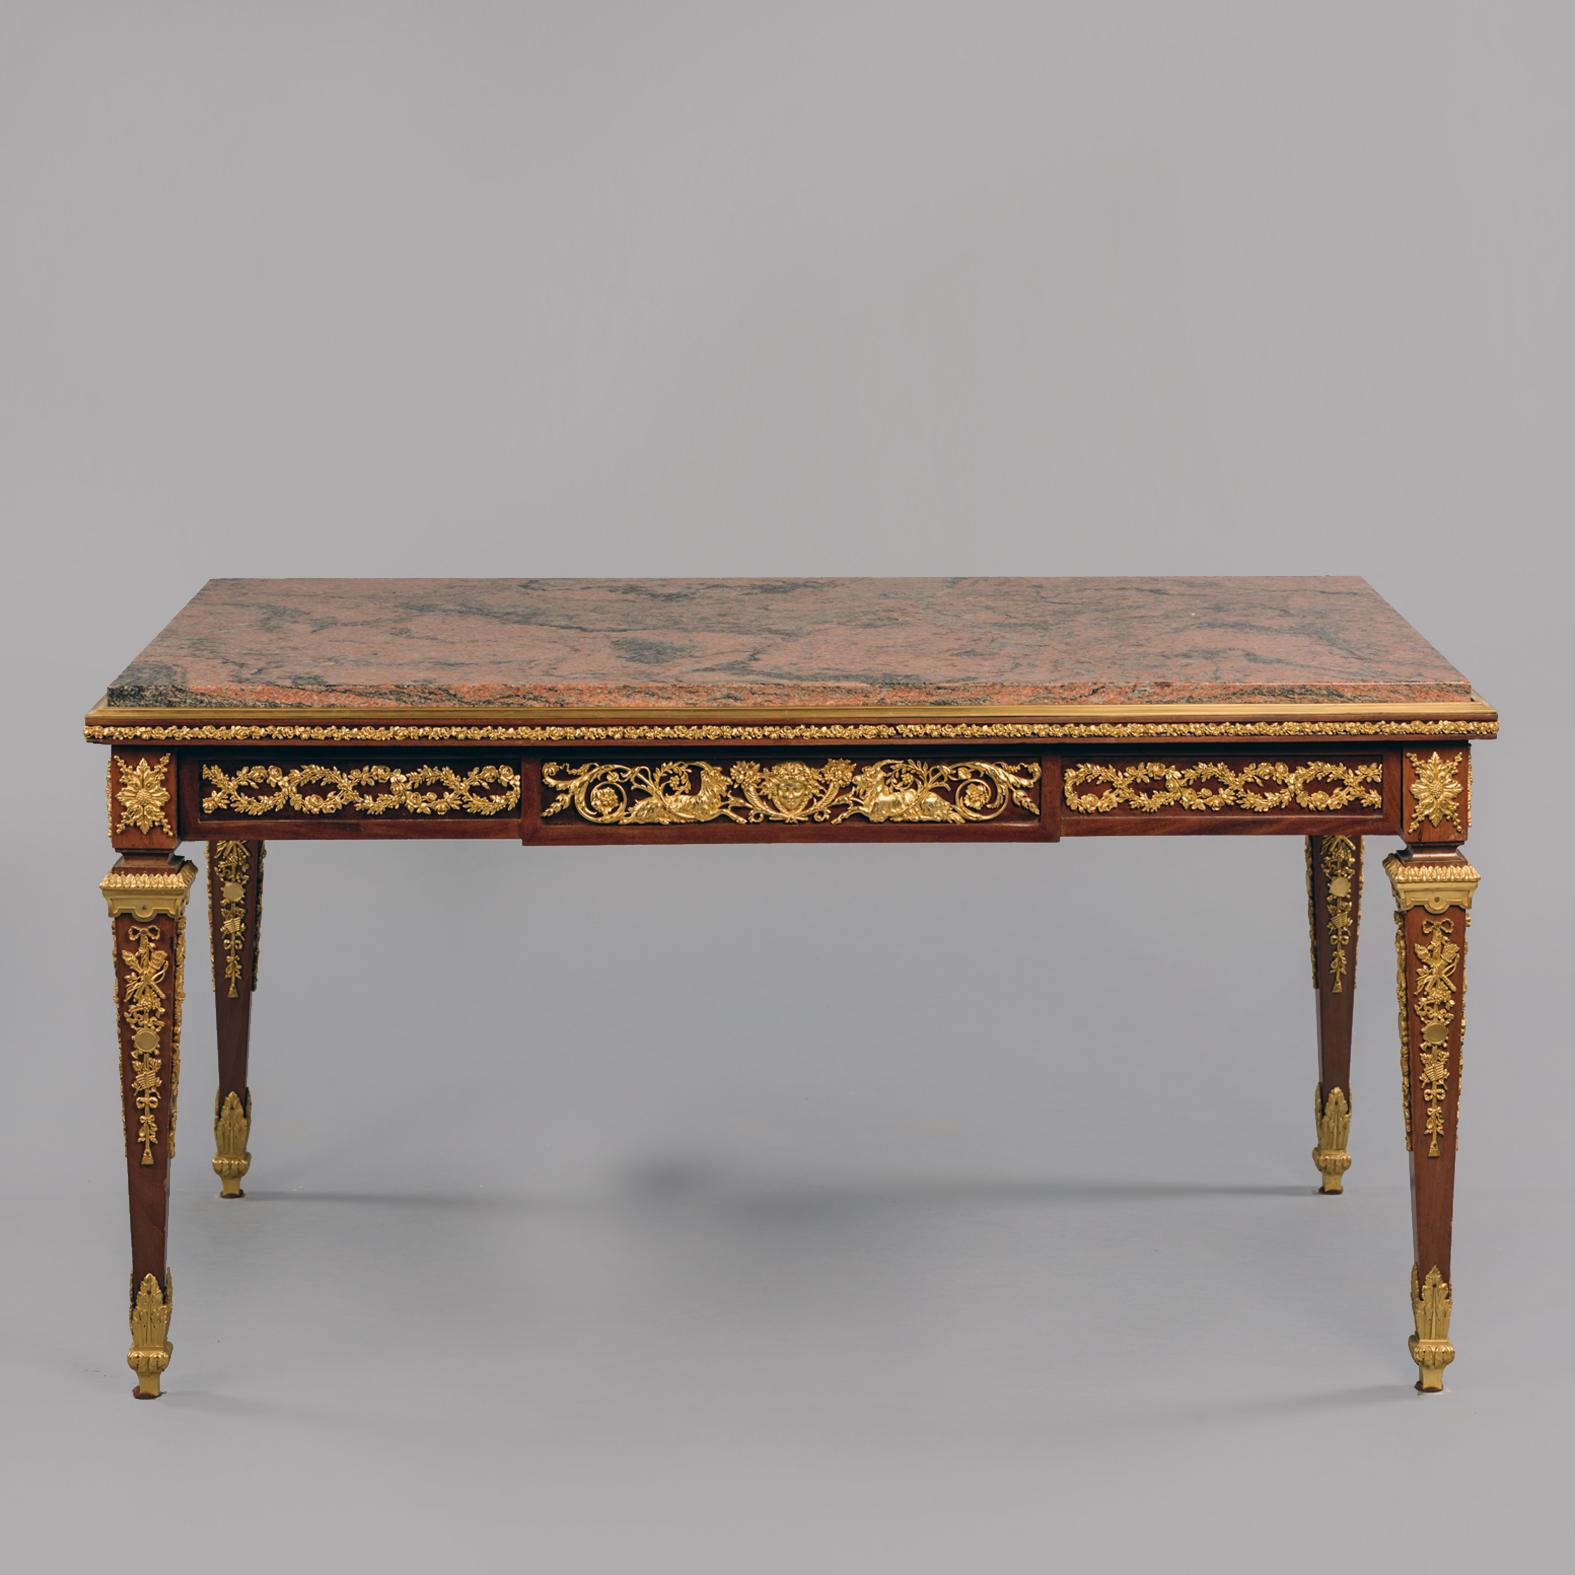 Table basse de style Louis XVI en bronze doré avec un plateau en marbre rouge veiné.

La table présente un plateau rectangulaire en marbre rouge veiné, surmonté d'une frise à décor de feuillages, centrée par une tablette ornée d'acanthes, d'un